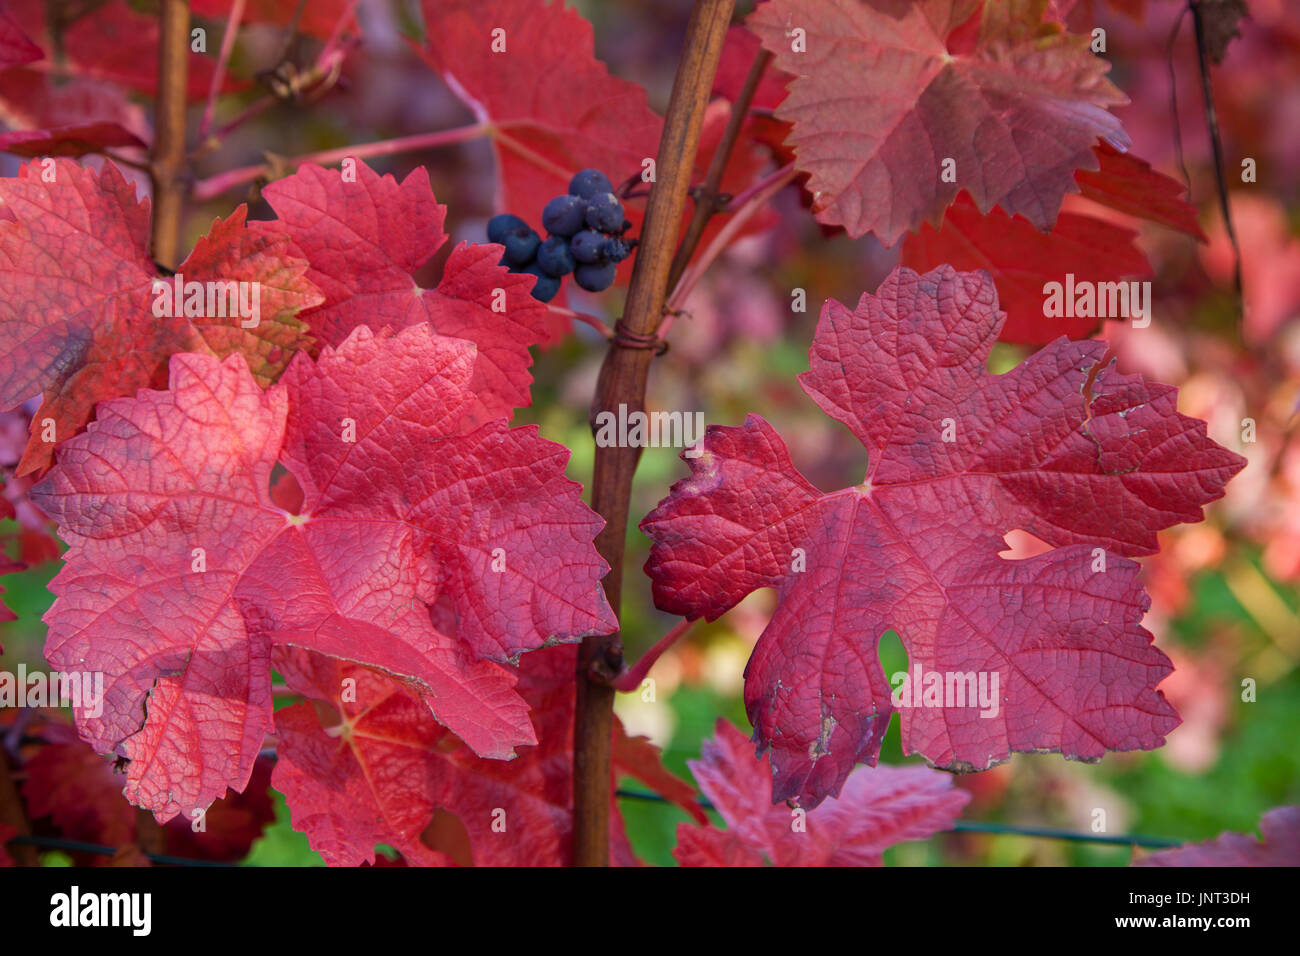 Herbstimpressionen, rot gefaerbte Weinblaetter, Schweich, Mittelmosel Renania-Palatinato, Deutschland, Europa | Impressioni autunno, colorato di rosso vino le Foto Stock